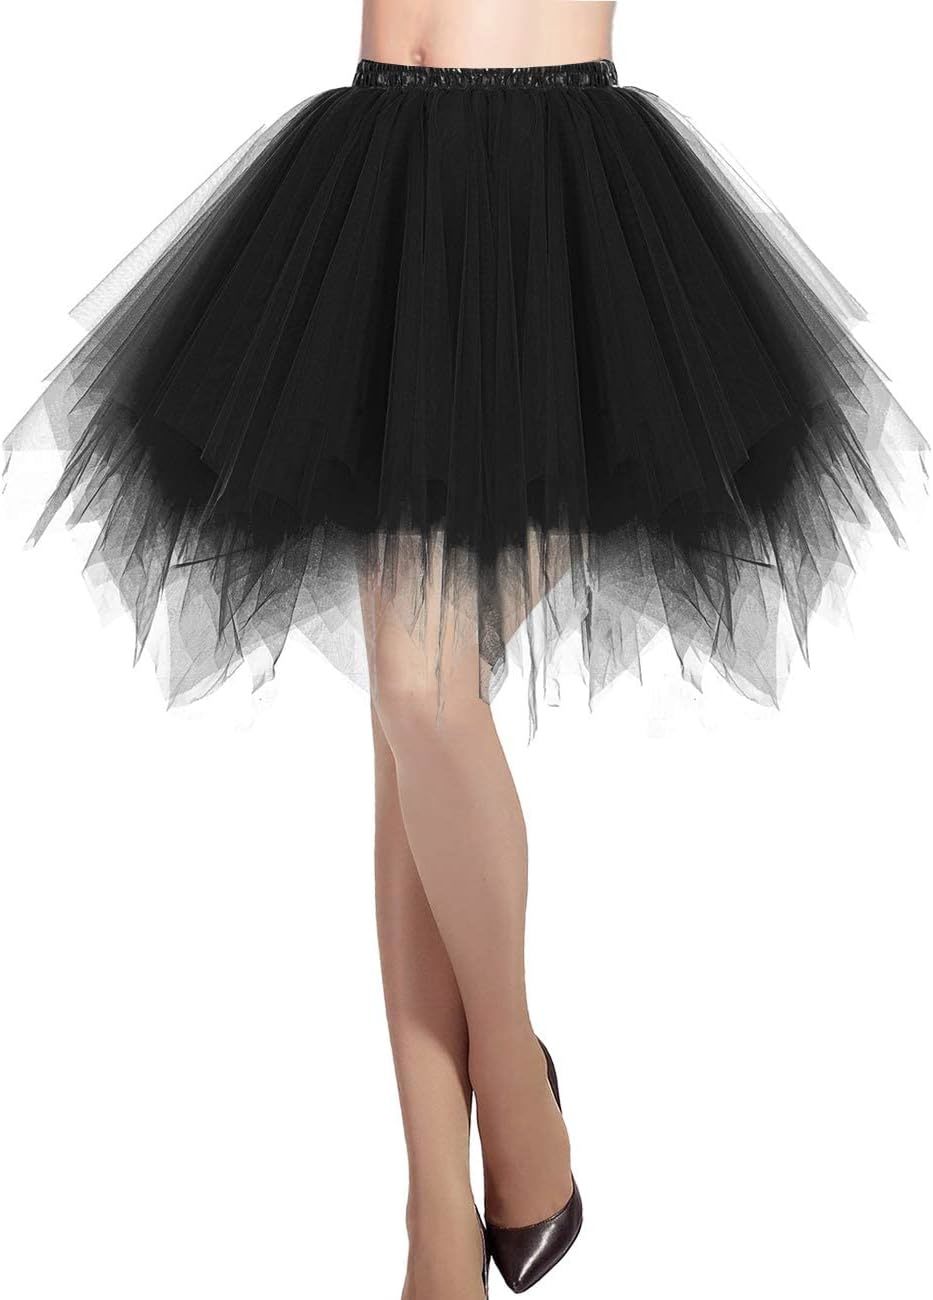 Primary image for Women's Short Tutu Ballet Bubble Skirt